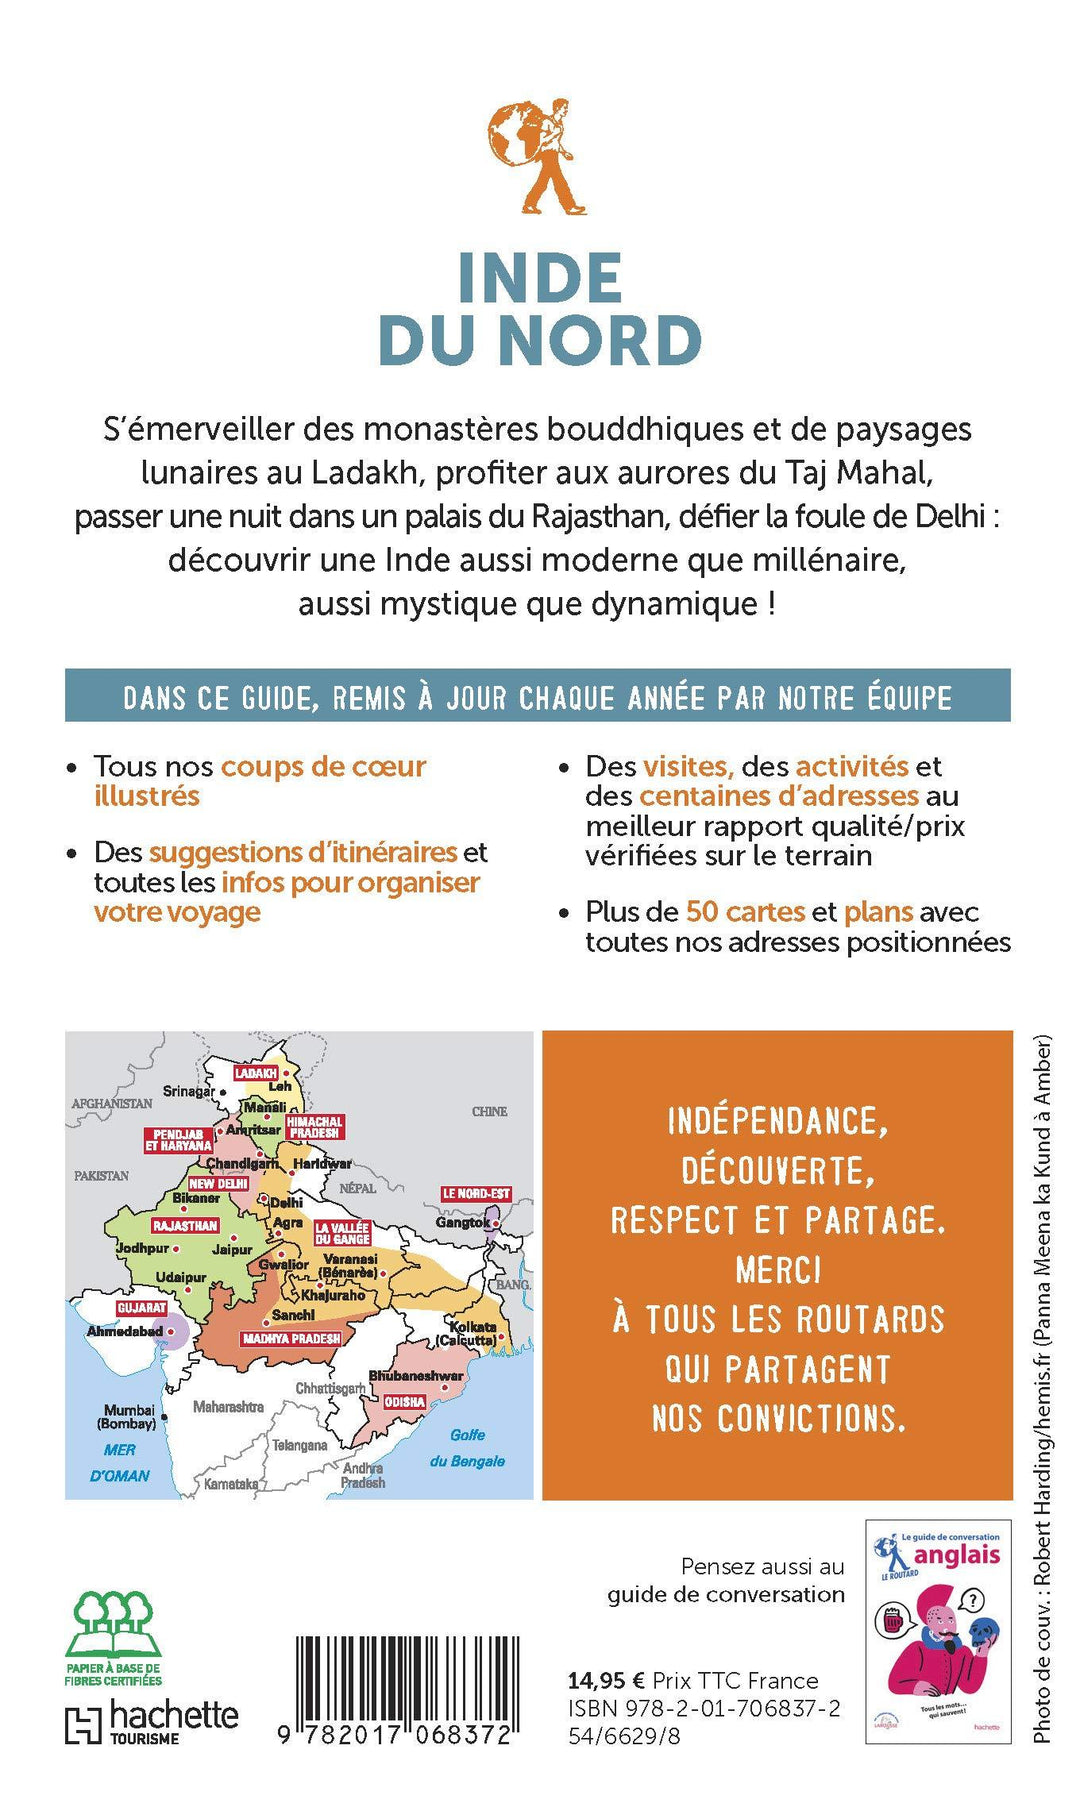 Guide du Routard - Inde du Nord 2020 | Hachette guide de voyage Hachette 